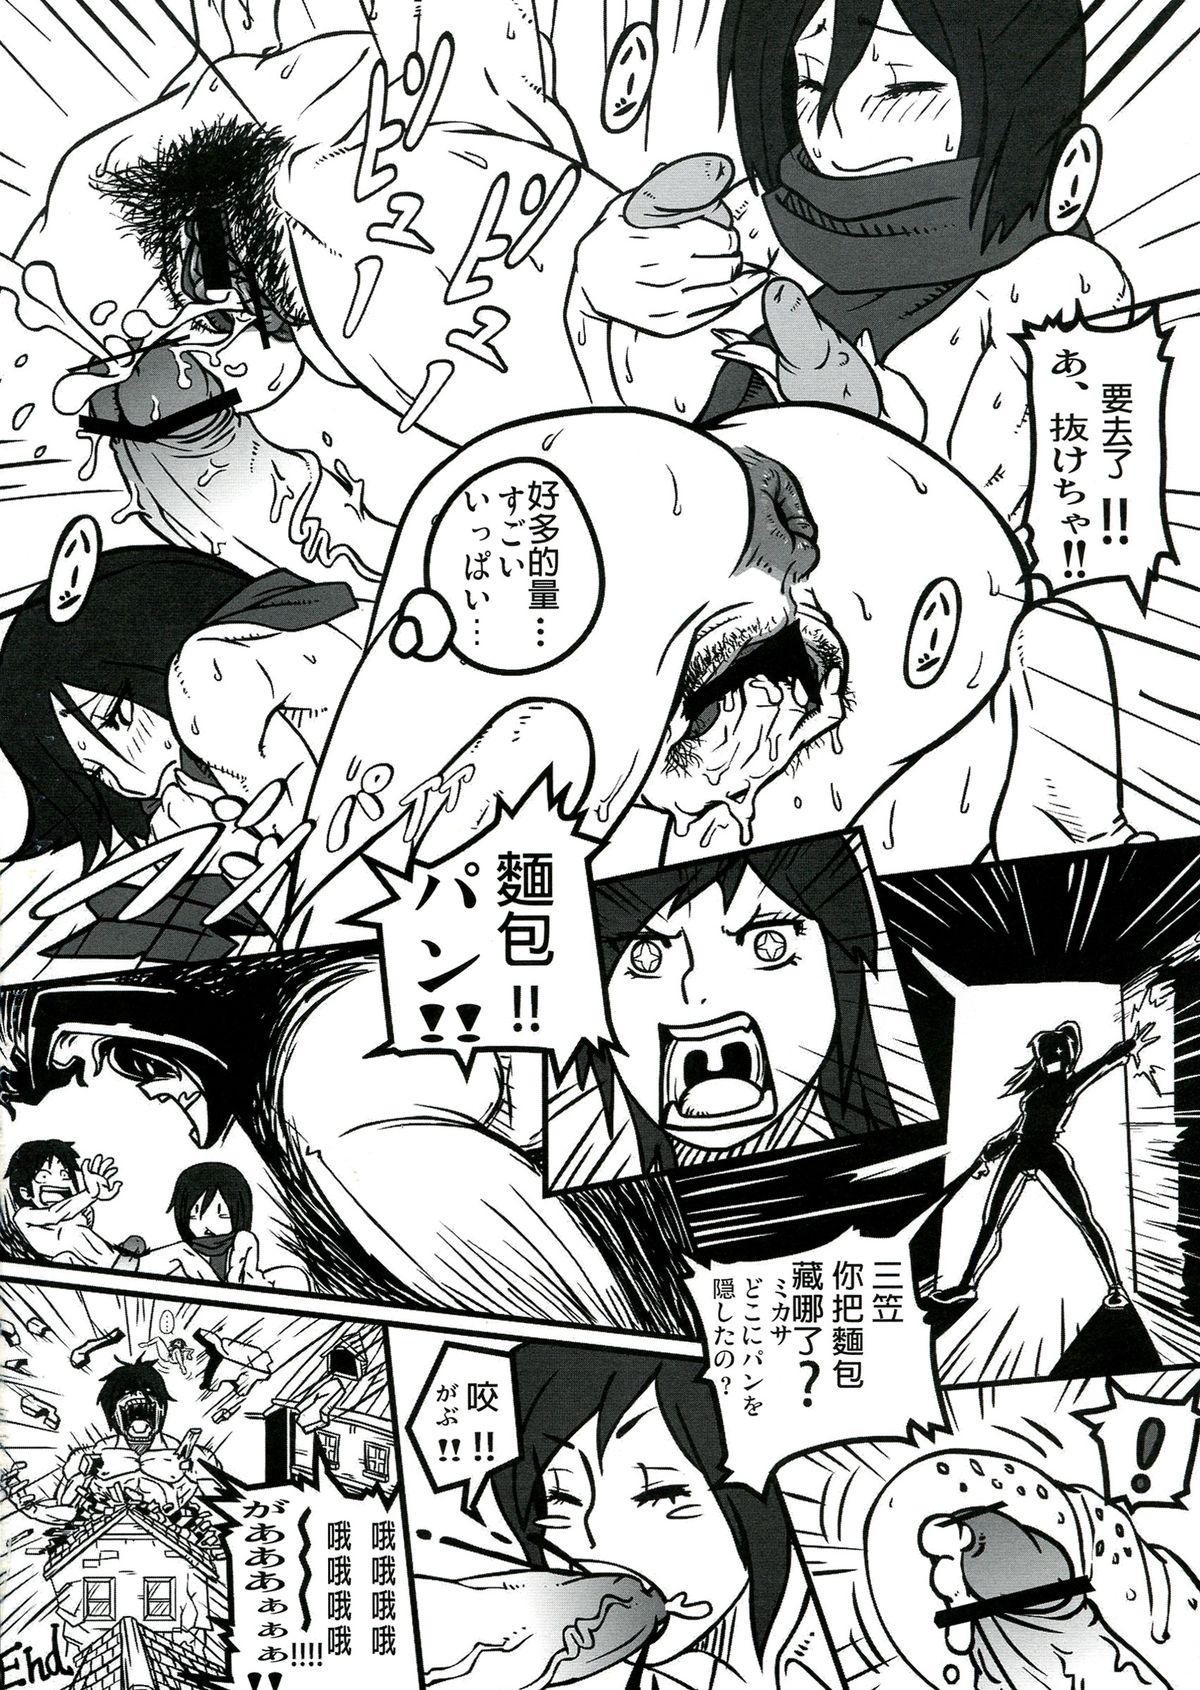 Women Sucking Dick Shin Hanzuuryouku 27 - Neon genesis evangelion Shingeki no kyojin Urusei yatsura Space battleship yamato Milfs - Page 48